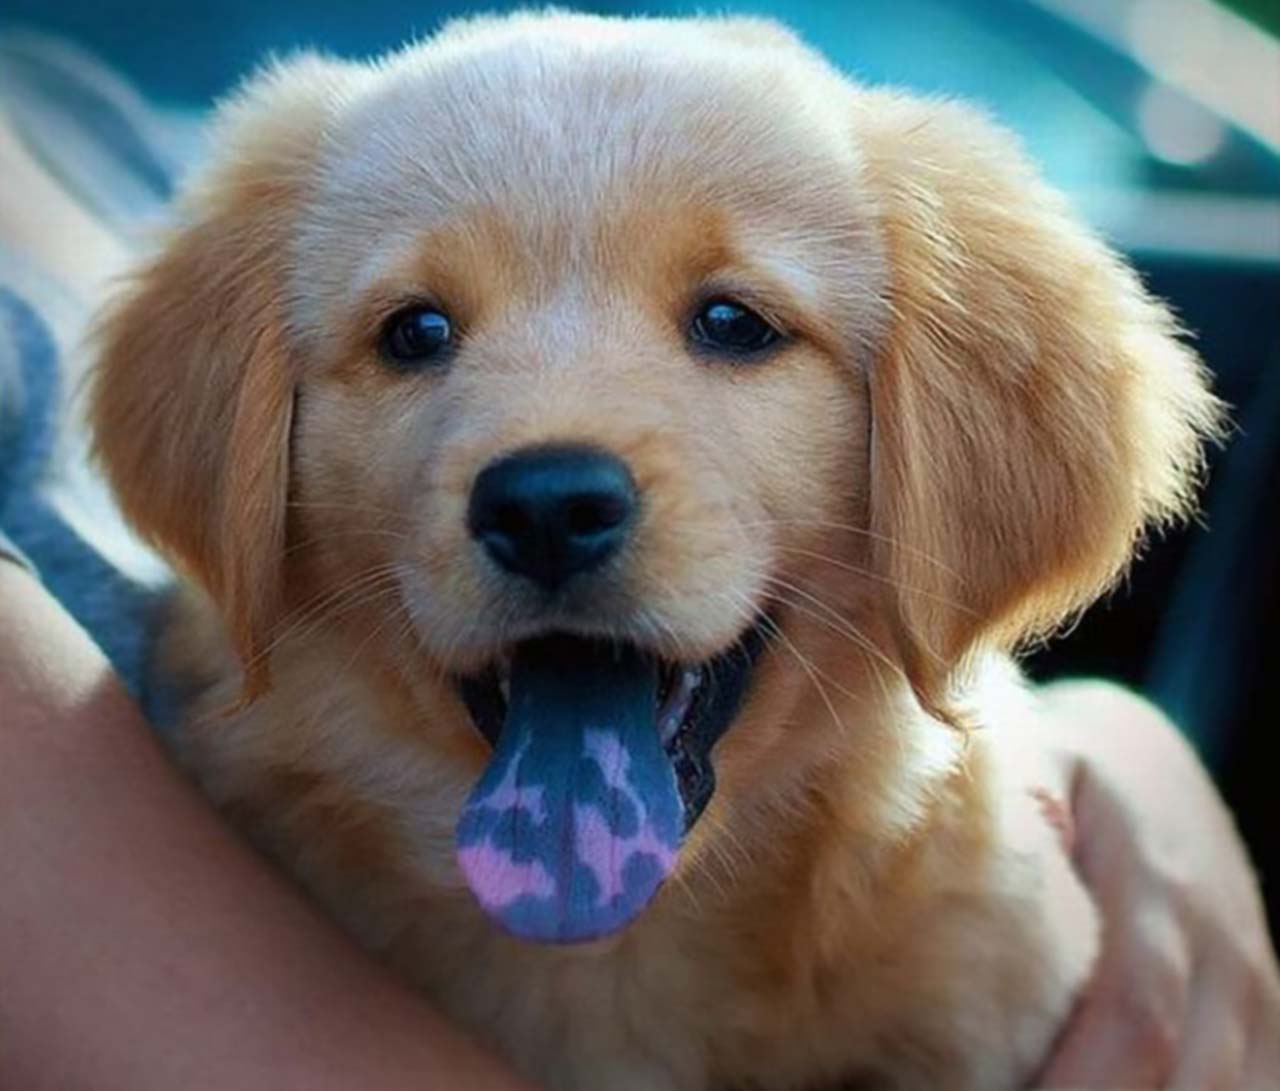 Chó có đốm lưỡi: Lưu ý tới những chú chó đáng yêu này có đốm lưỡi độc đáo! Hãy cùng xem những hình ảnh tuyệt đẹp của chúng và khám phá đặc điểm độc đáo này hoàn toàn tự nhiên!